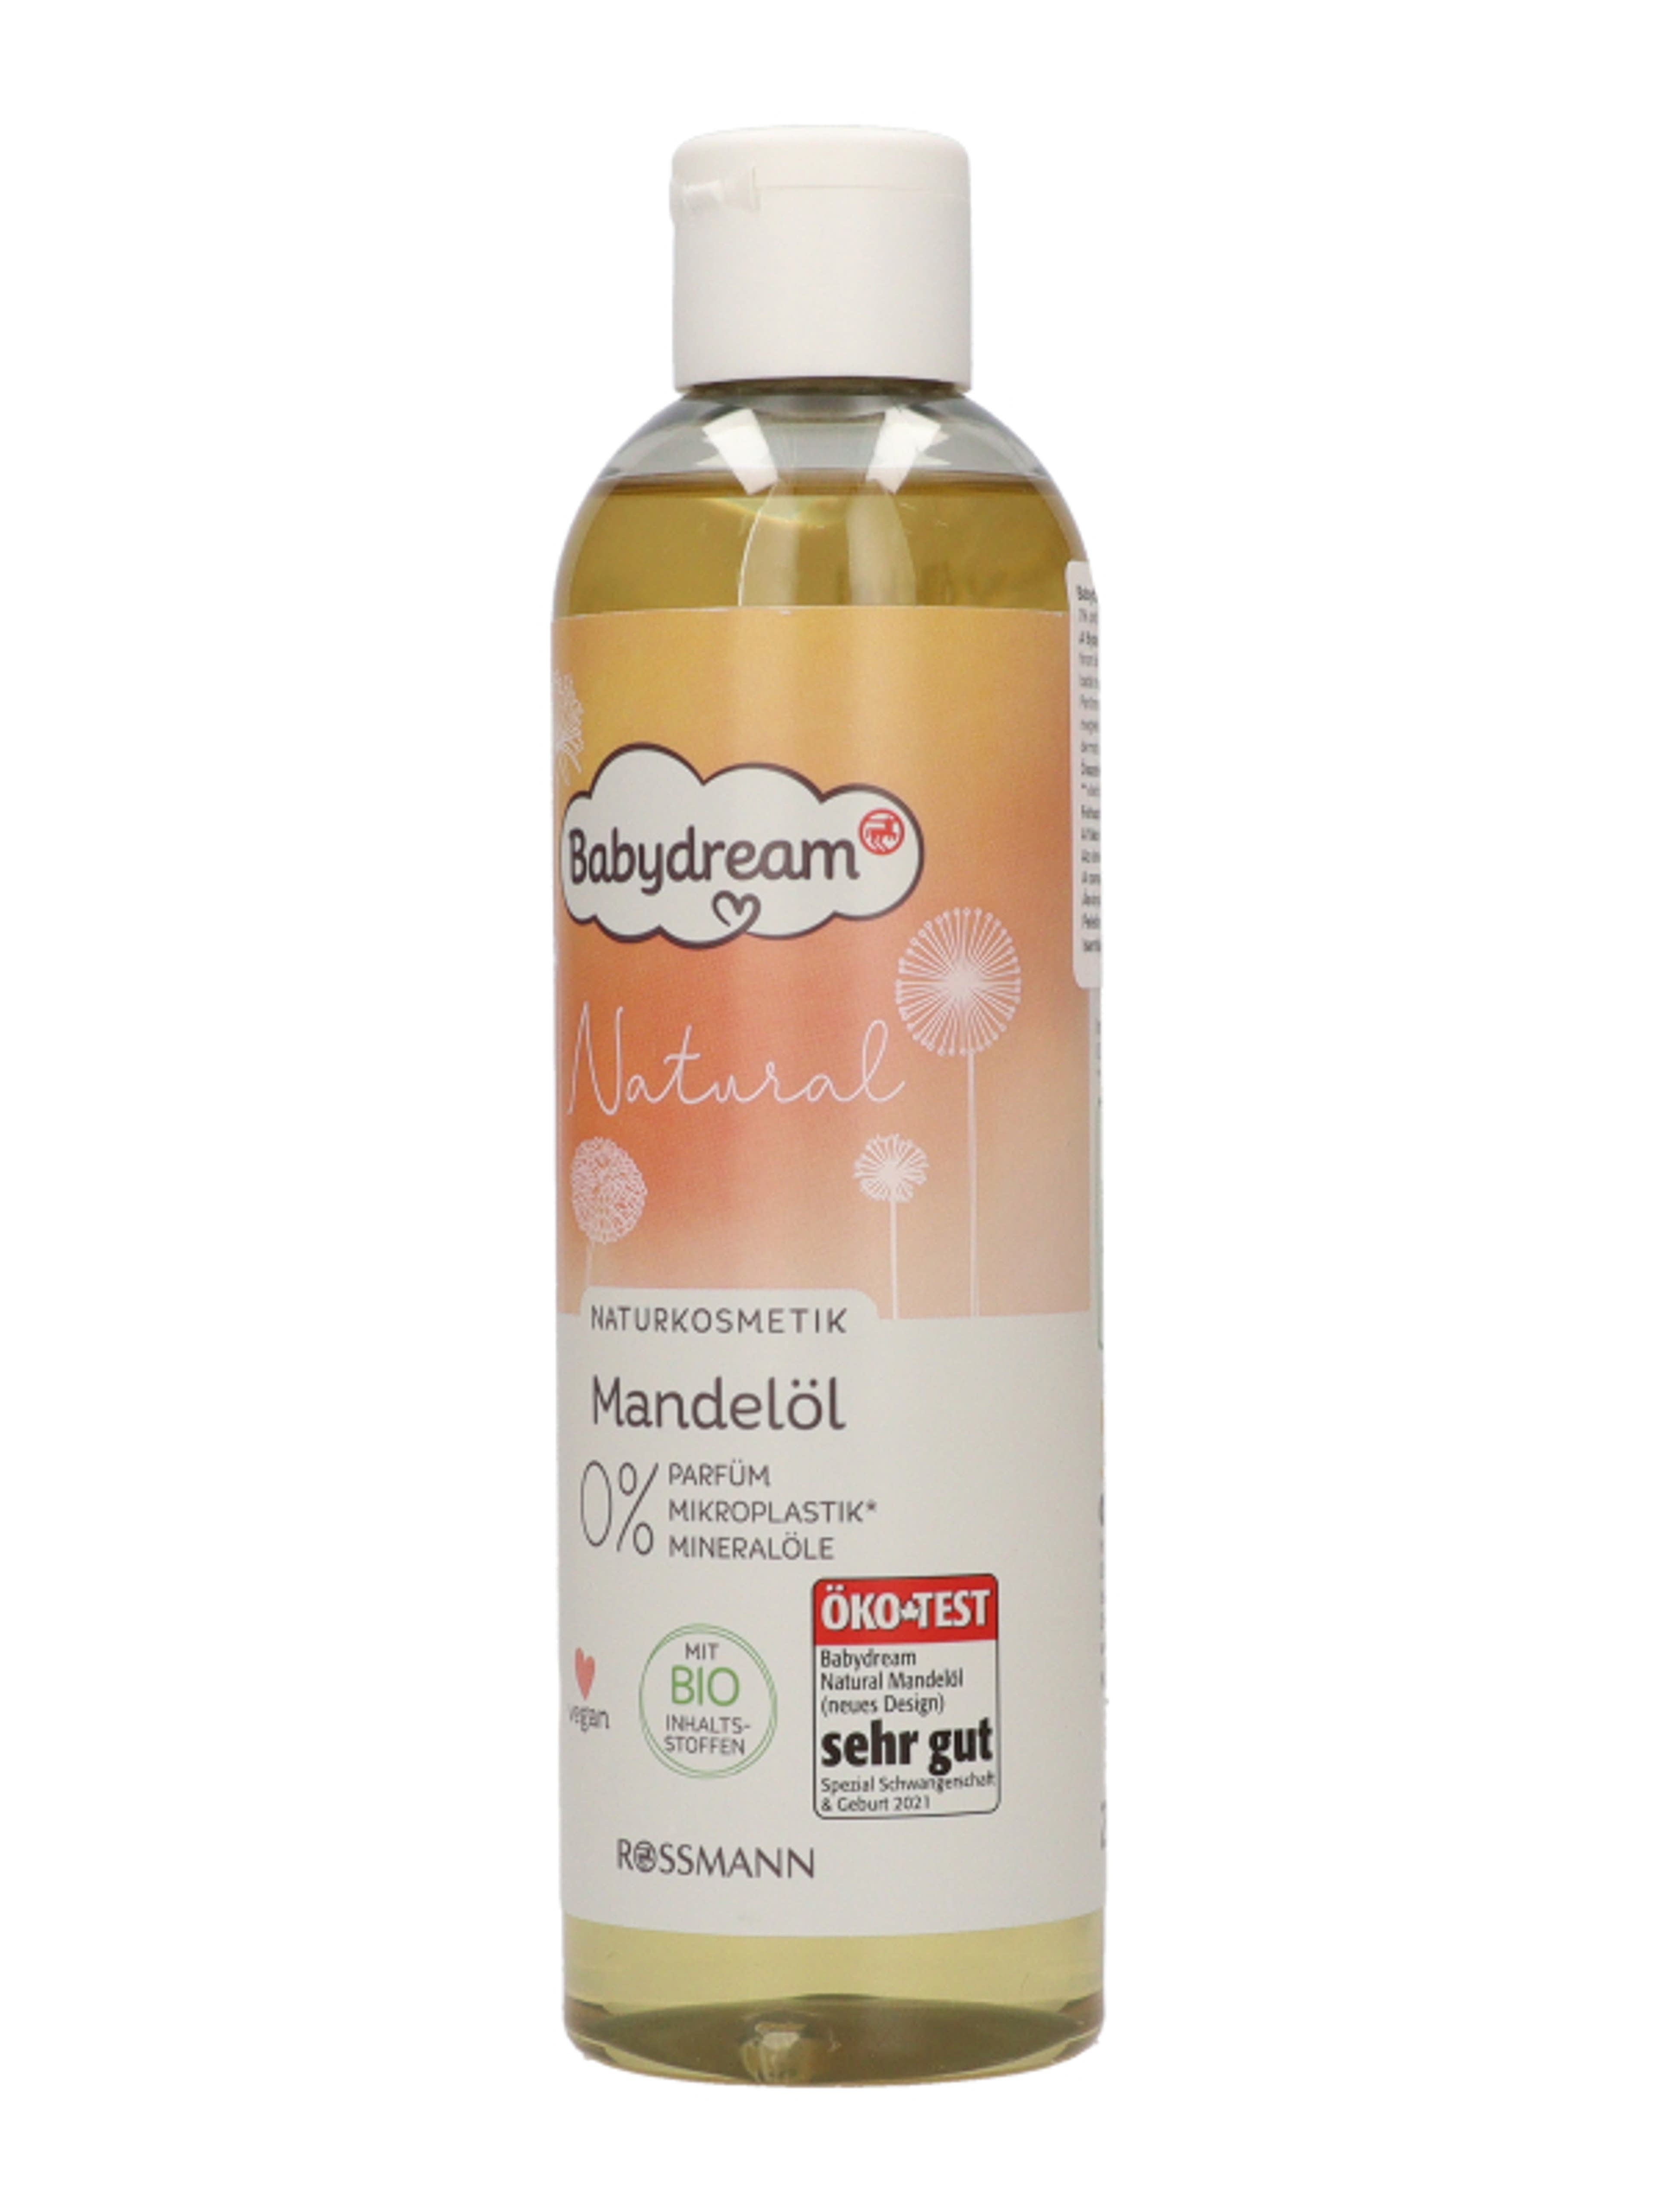 Babydream Natural mandulaolaj - 250 ml-3